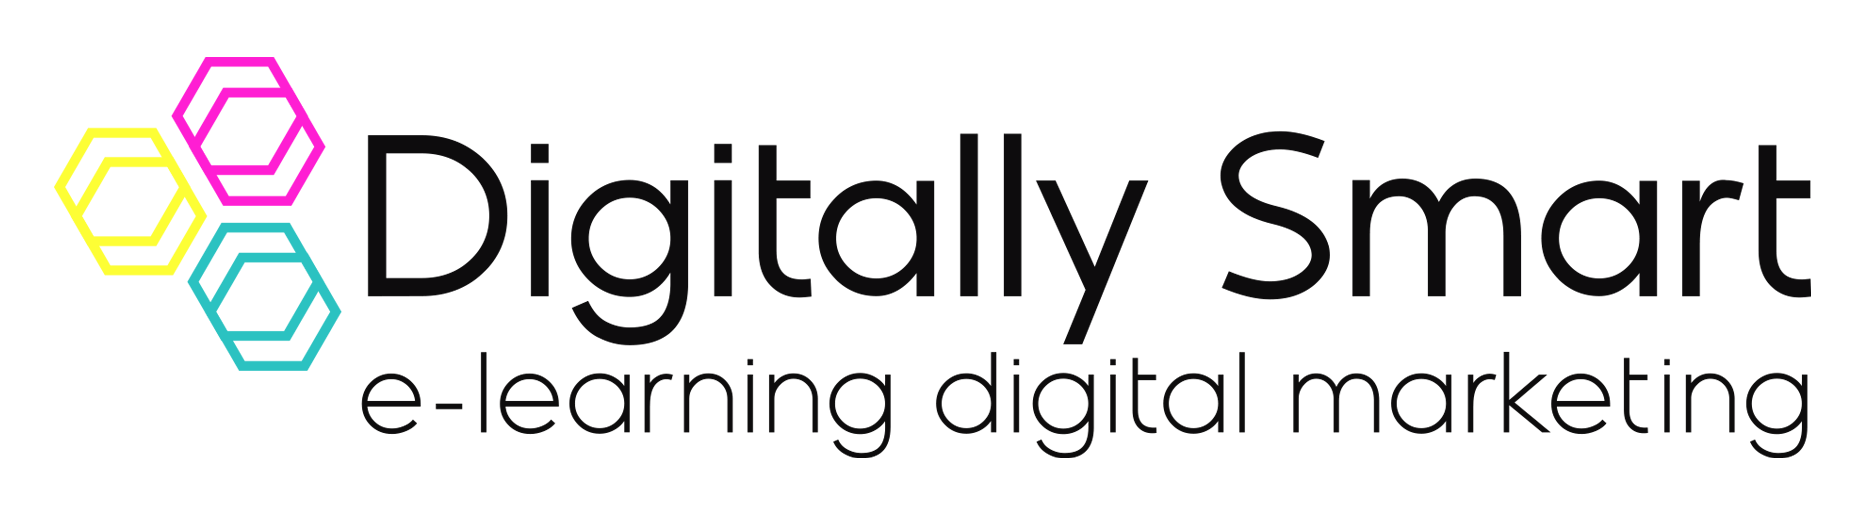 Digitally Smart Ltd. Logo